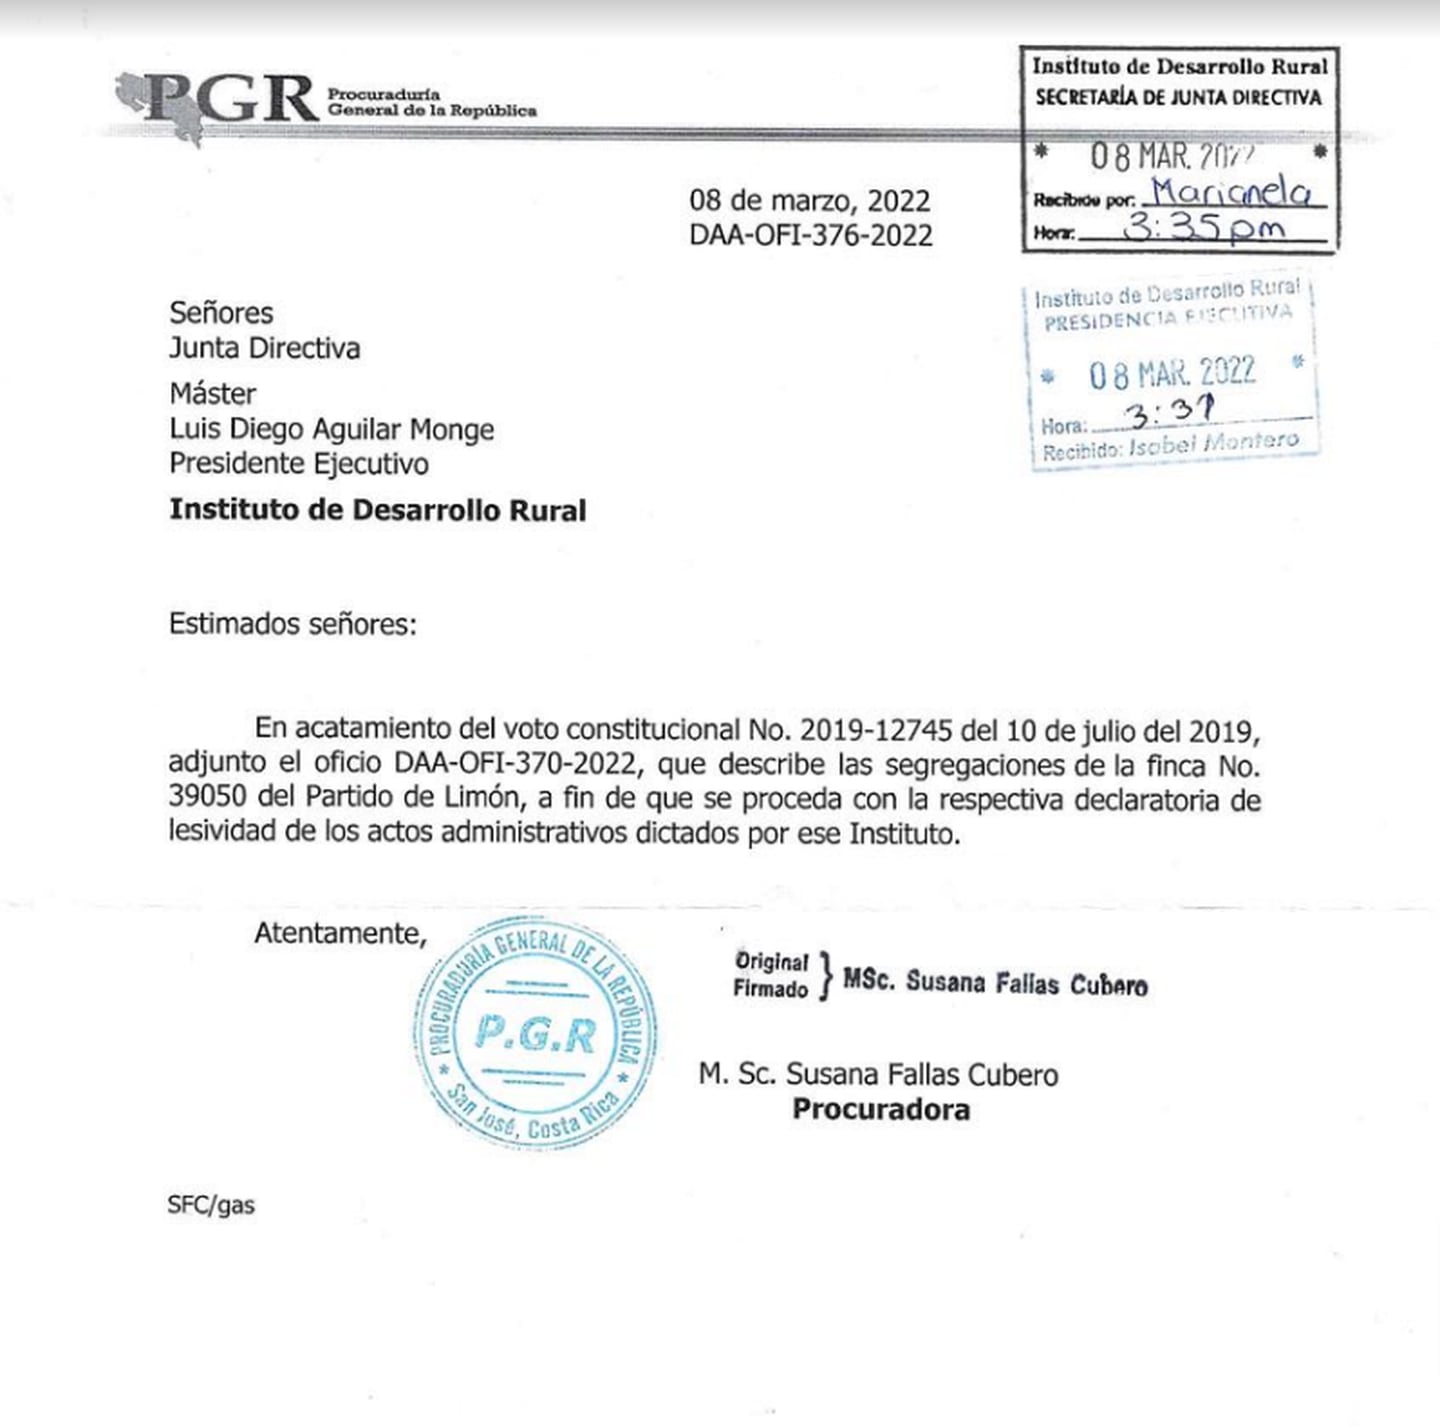 Carta enviada por la procuradora Susana Fallas Cubero al entonces presidente ejecutivo del Inder, Luis Diego Aguilar Monge, el 8 de marzo del 2022. Foto: Reproducción